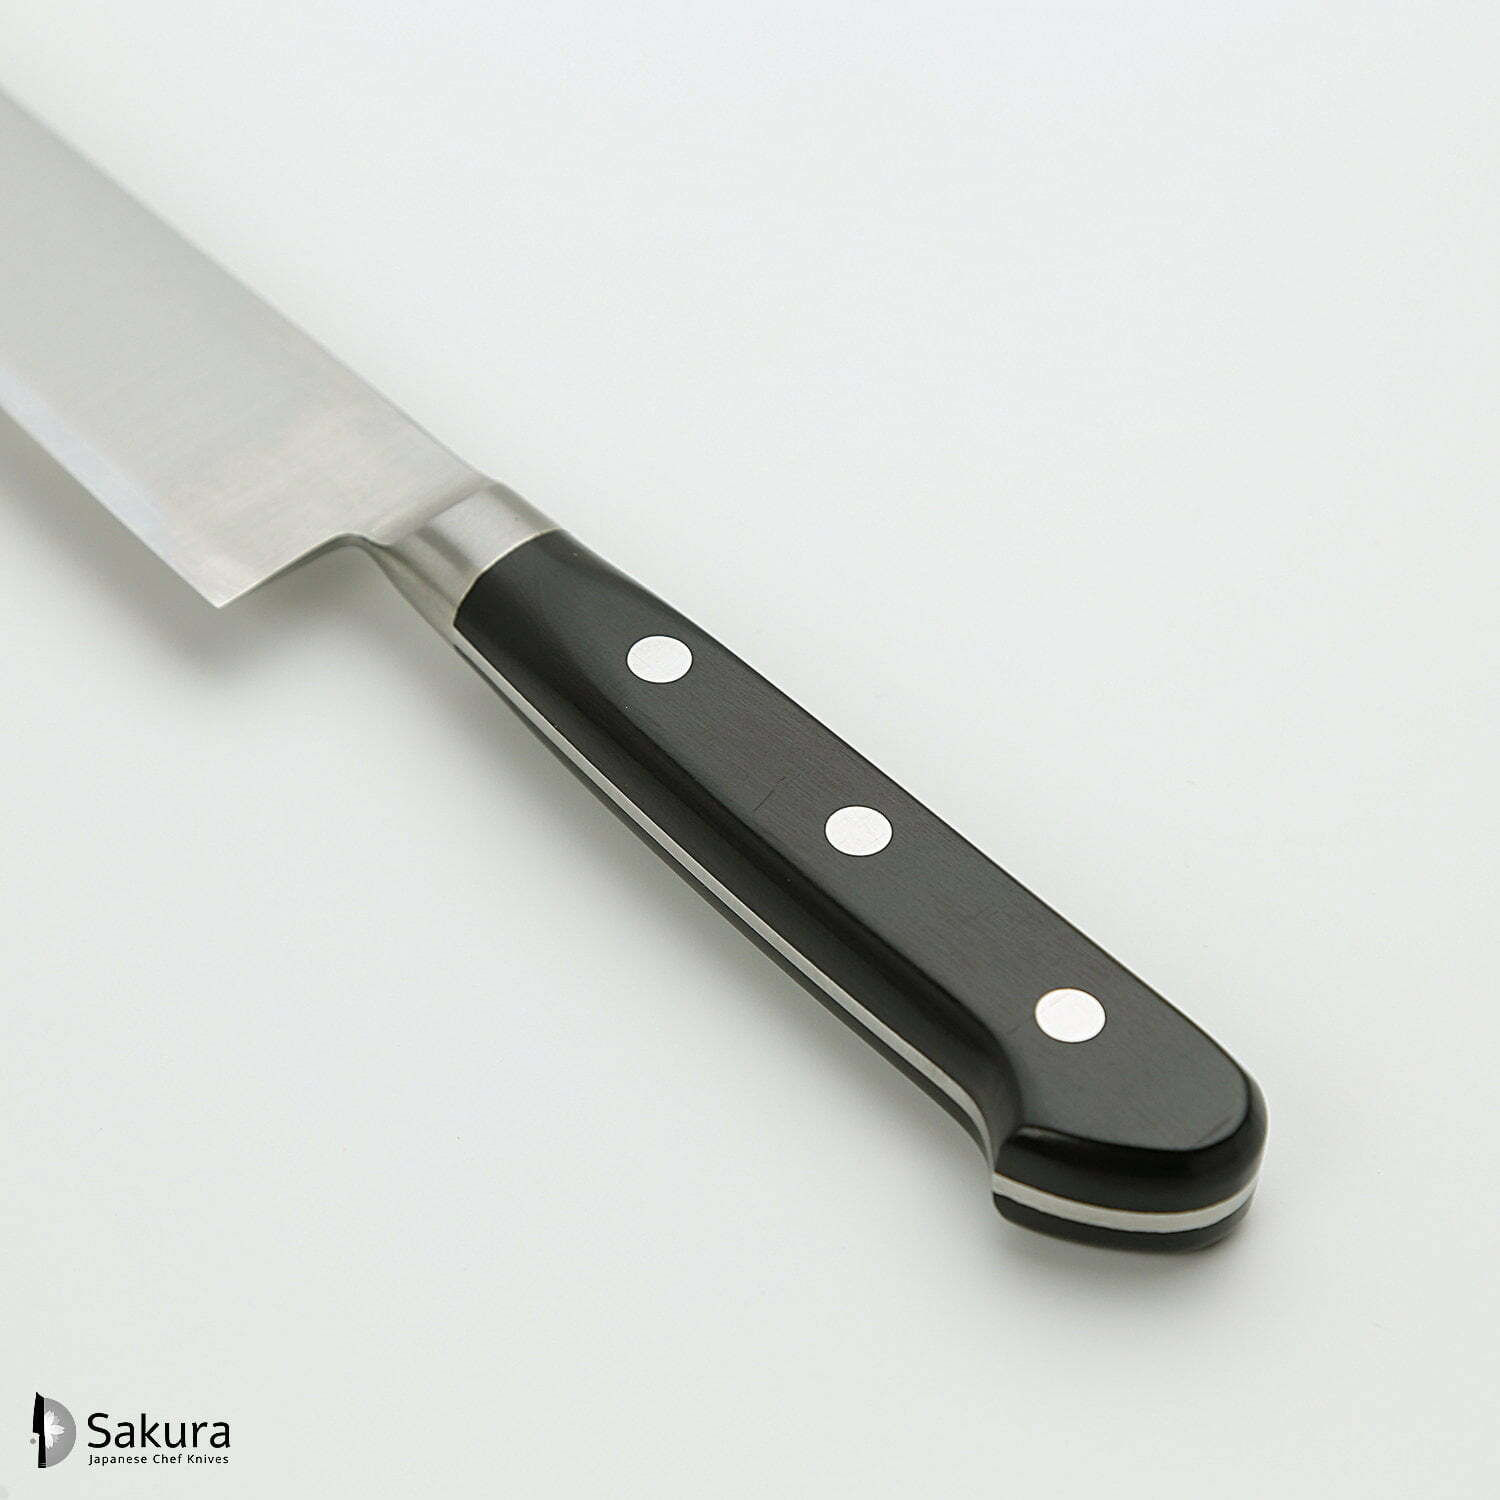 סכין רב-תכליתית בּוּנְקָה 180מ״מ מחוזקת 3 שכבות: פלדת פחמן יפנית מתקדמת מסוג R2/SG2 עטופה פלדת אל-חלד גימור מבריק ג׳יקו סאקאיי יפן